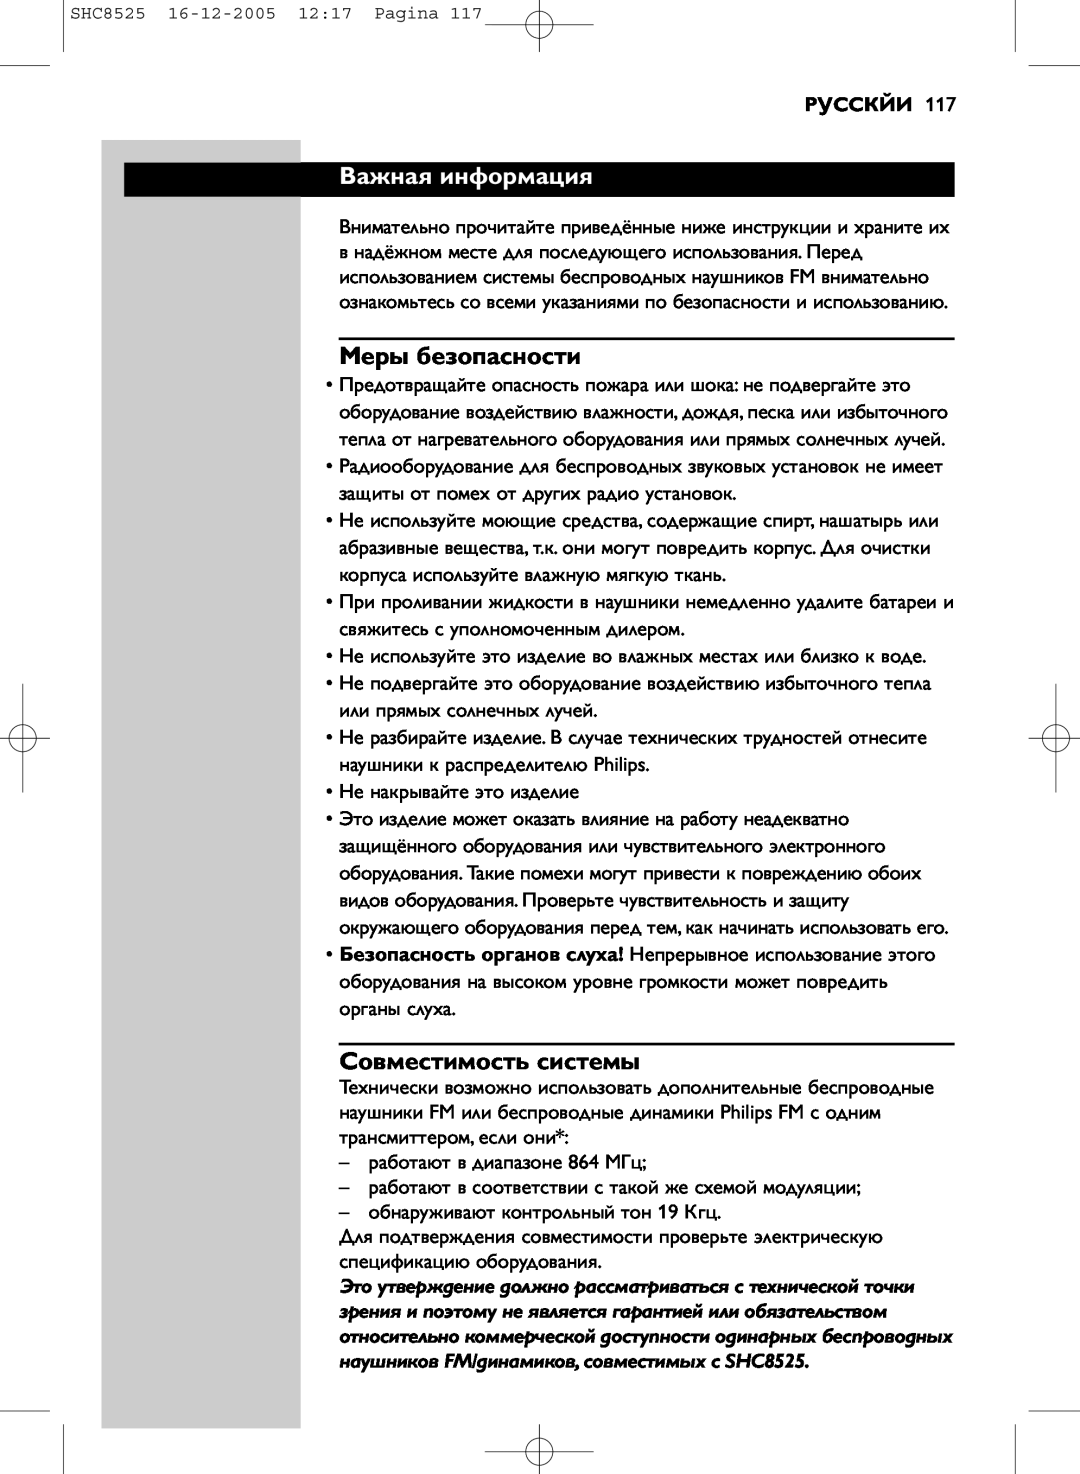 Event electronic SHC8525 manual Важная информация, Меры безопасности, Совместимость системы, Русскйи 